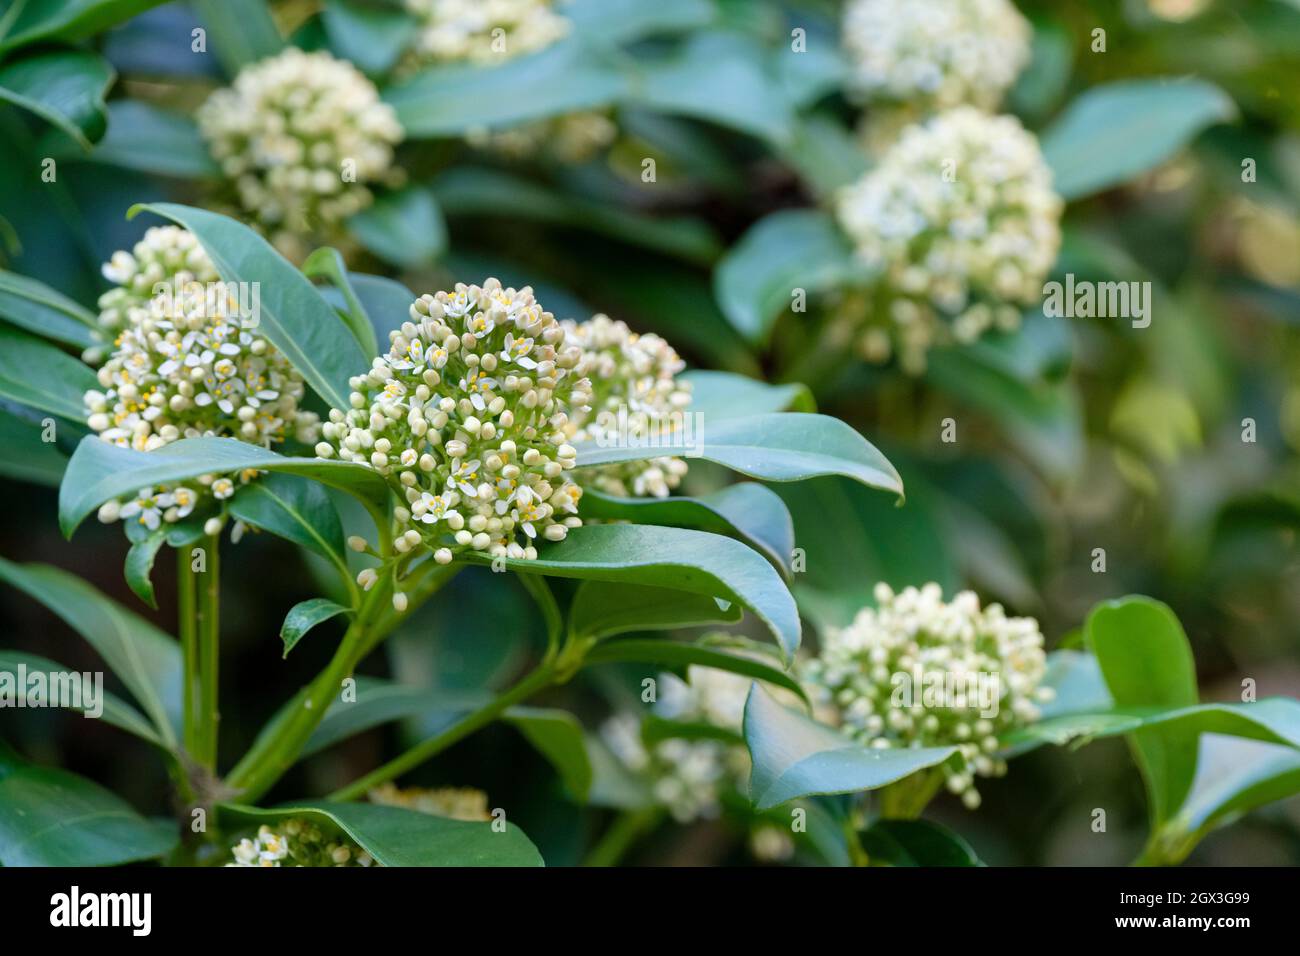 Skimmia japonica 'Fragrans' syn 'Fragrans', auch bekannt als japanische Skimmia 'Fragrans'. Duftende weiße Blüten im frühen Frühjahr. Stockfoto